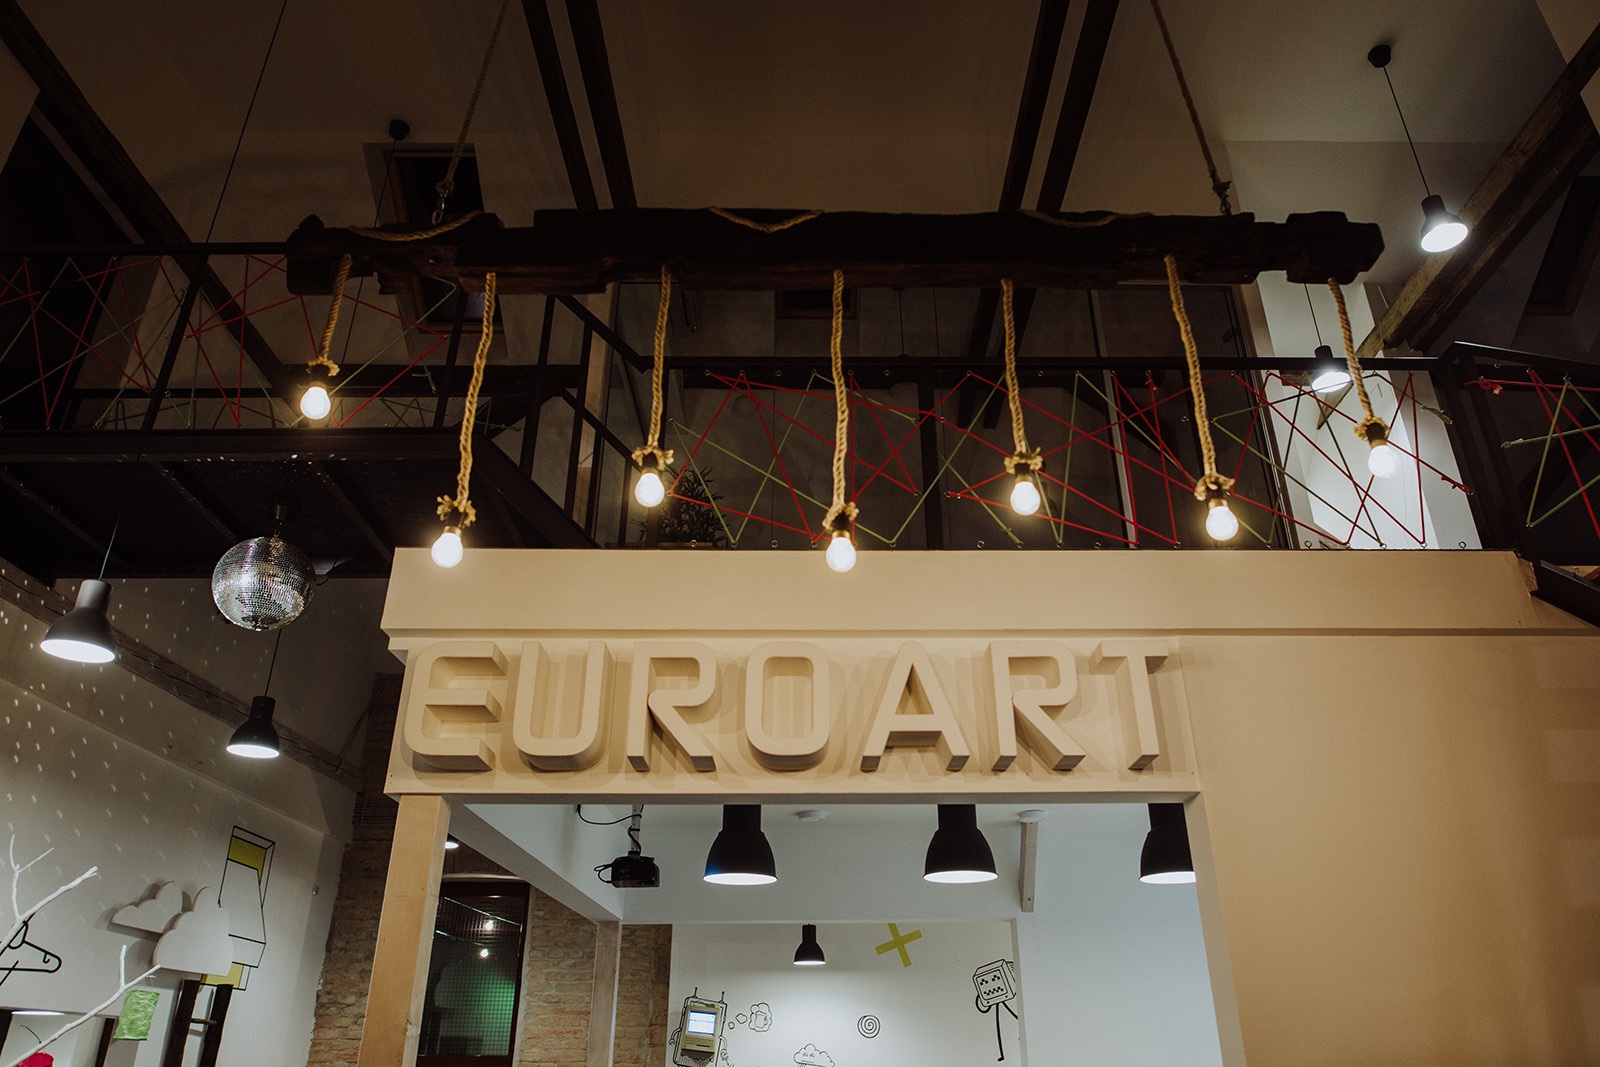 euroart-93-office-1